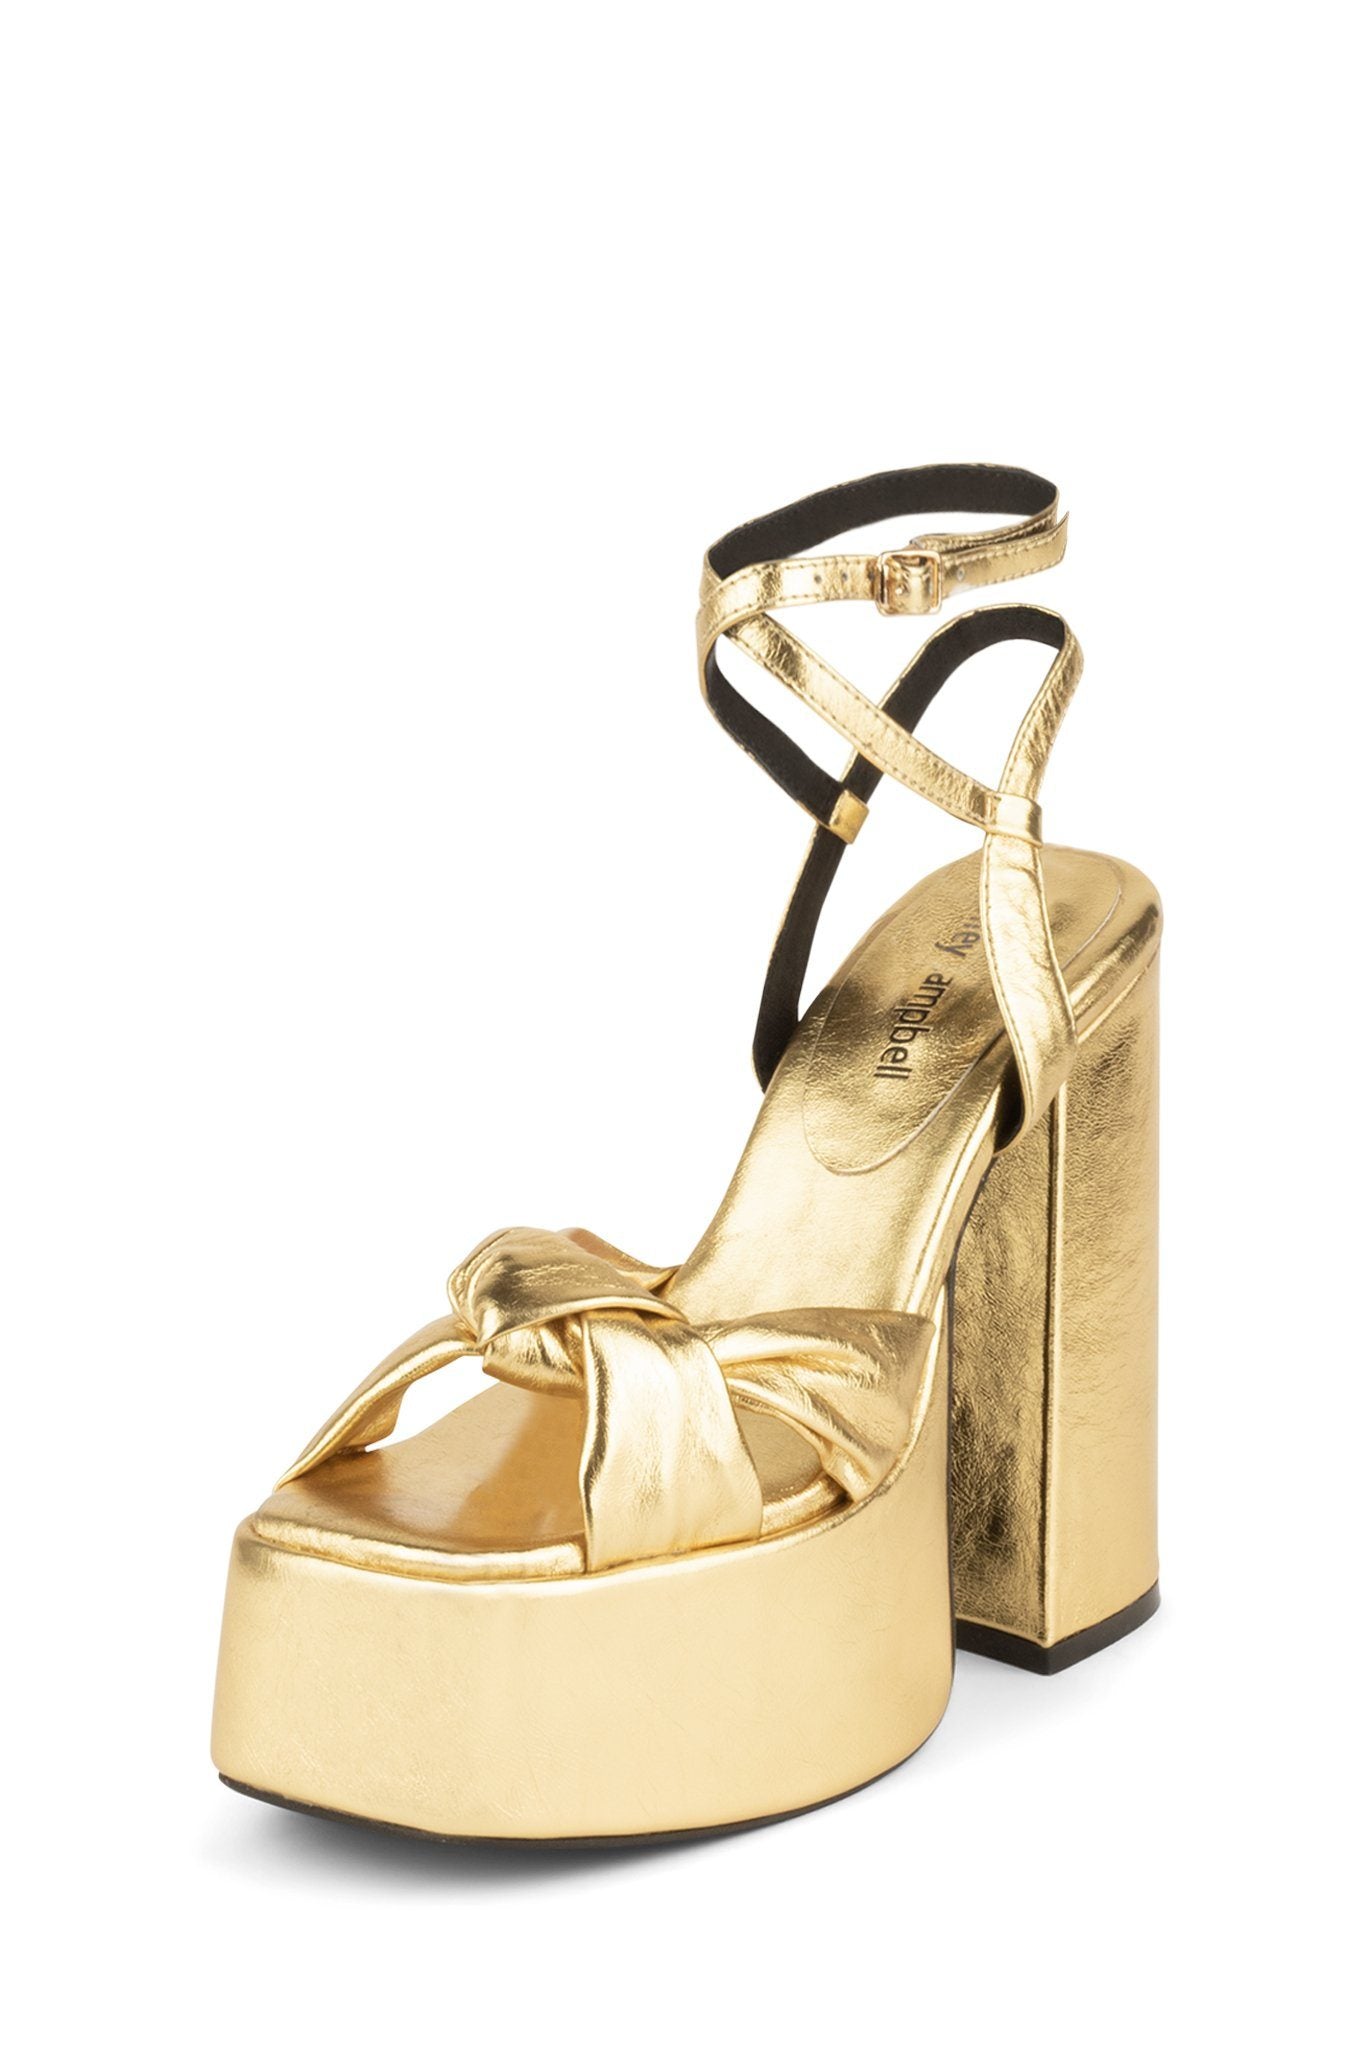 gold platform sandal heels